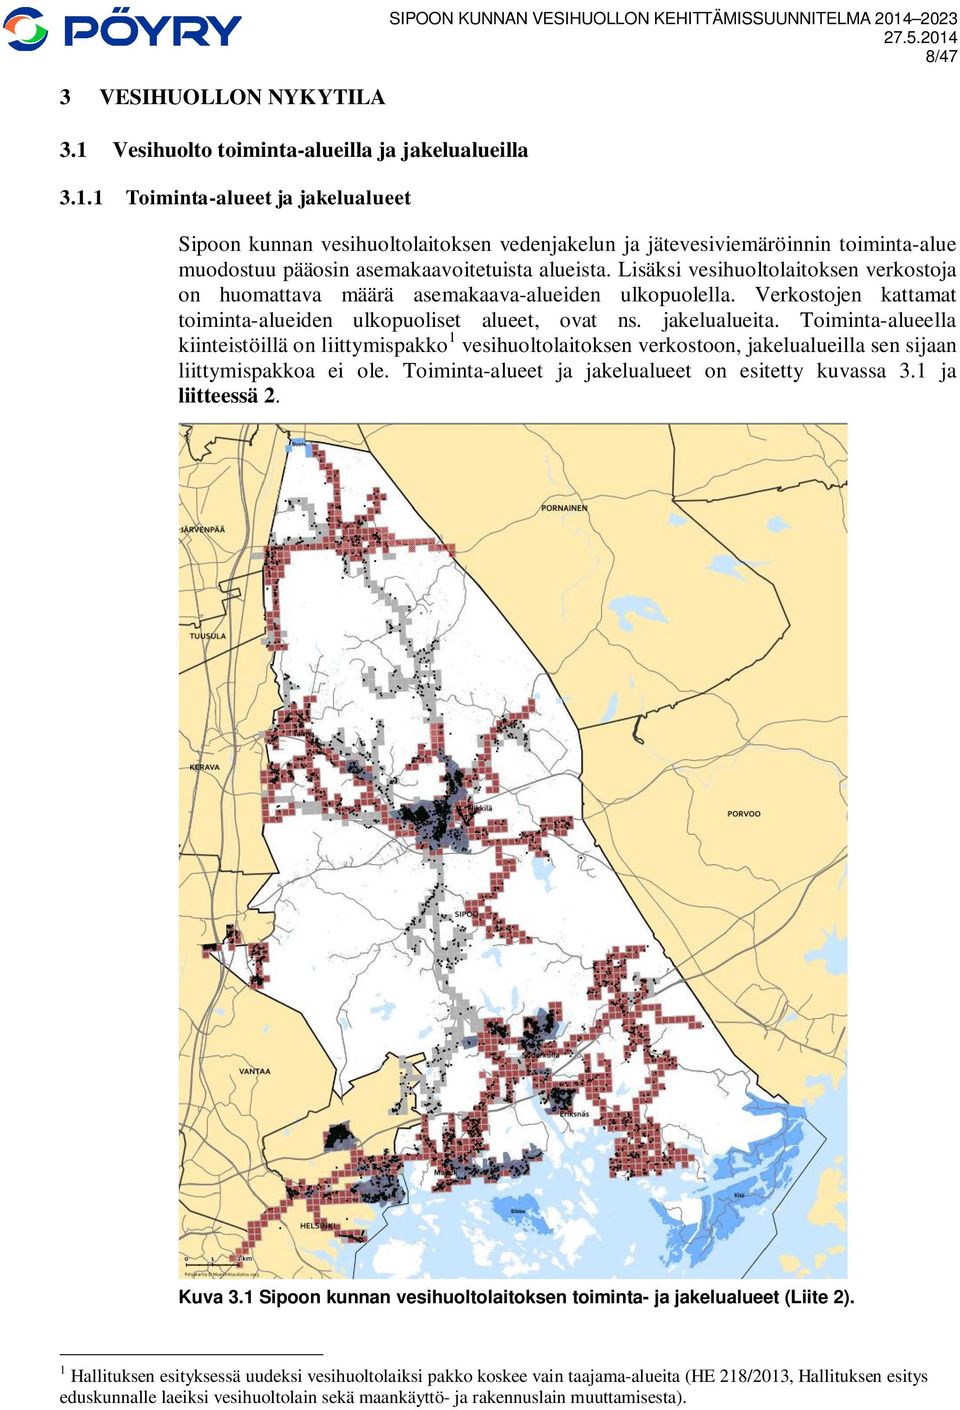 1 Toiminta-alueet ja jakelualueet SIPOON KUNNAN VESIHUOLLON KEHITTÄMISSUUNNITELMA 2014 2023 8/47 Sipoon kunnan vesihuoltolaitoksen vedenjakelun ja jätevesiviemäröinnin toiminta-alue muodostuu pääosin